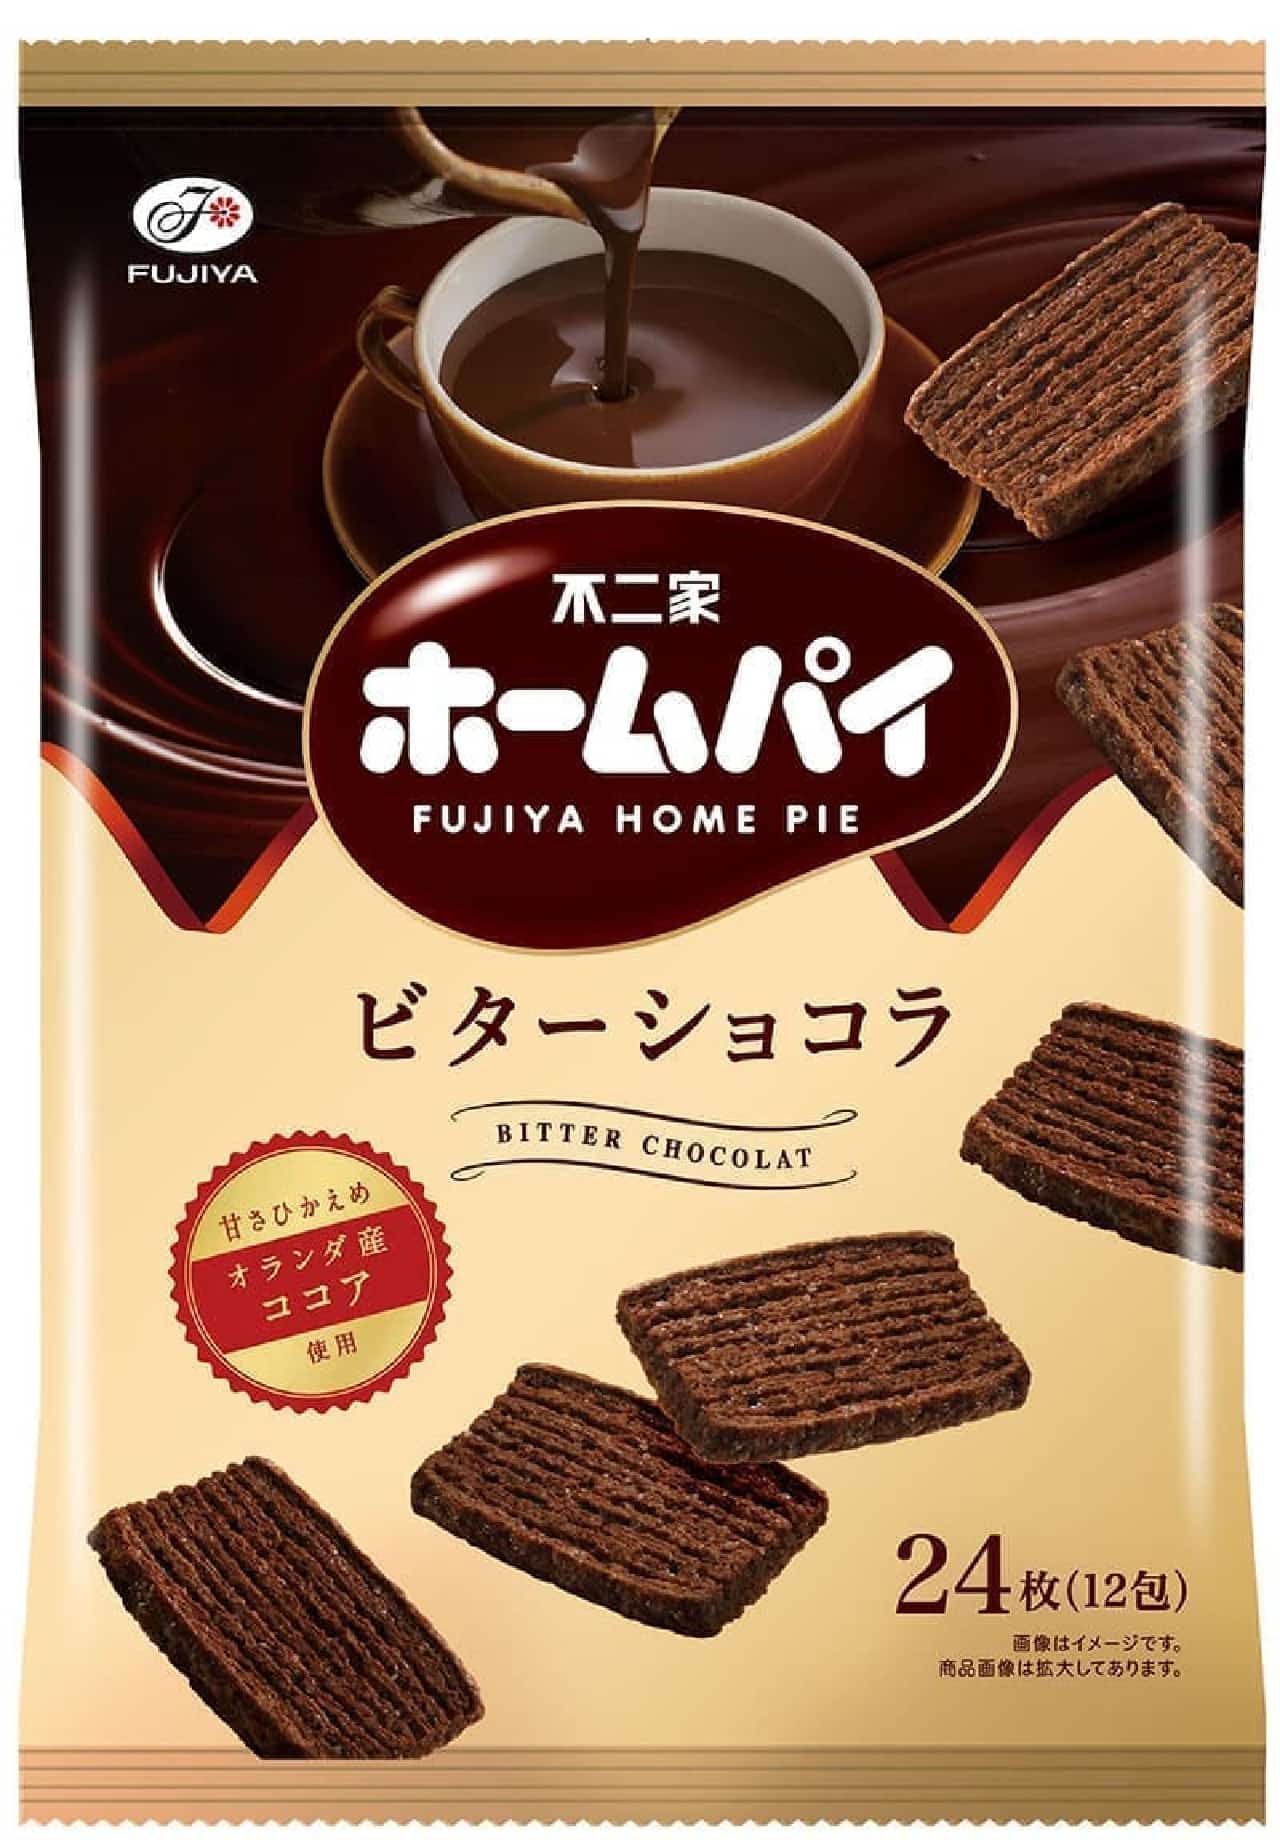 Fujiya "Home Pie (Bitter Chocolat)"